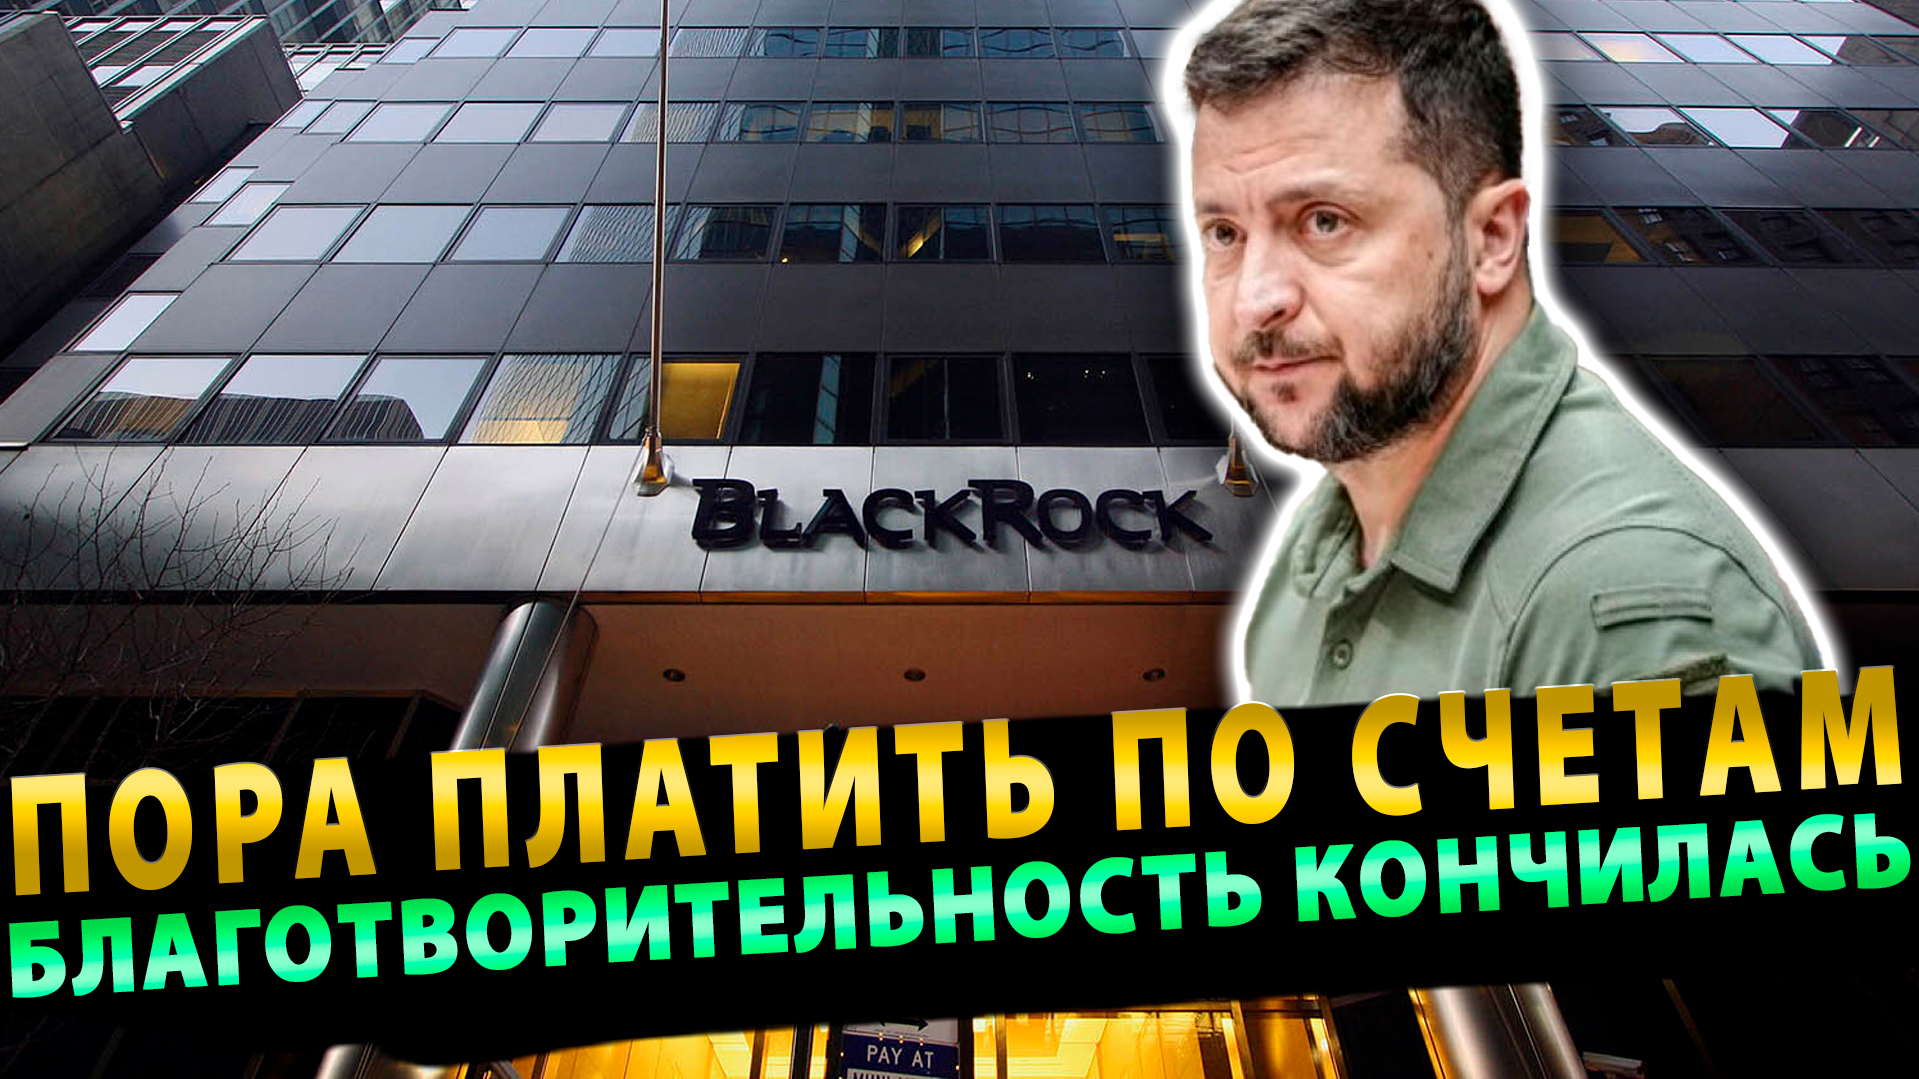 Благотворительность кончилась. BlackRock хочет заставить Украину платить по долгам